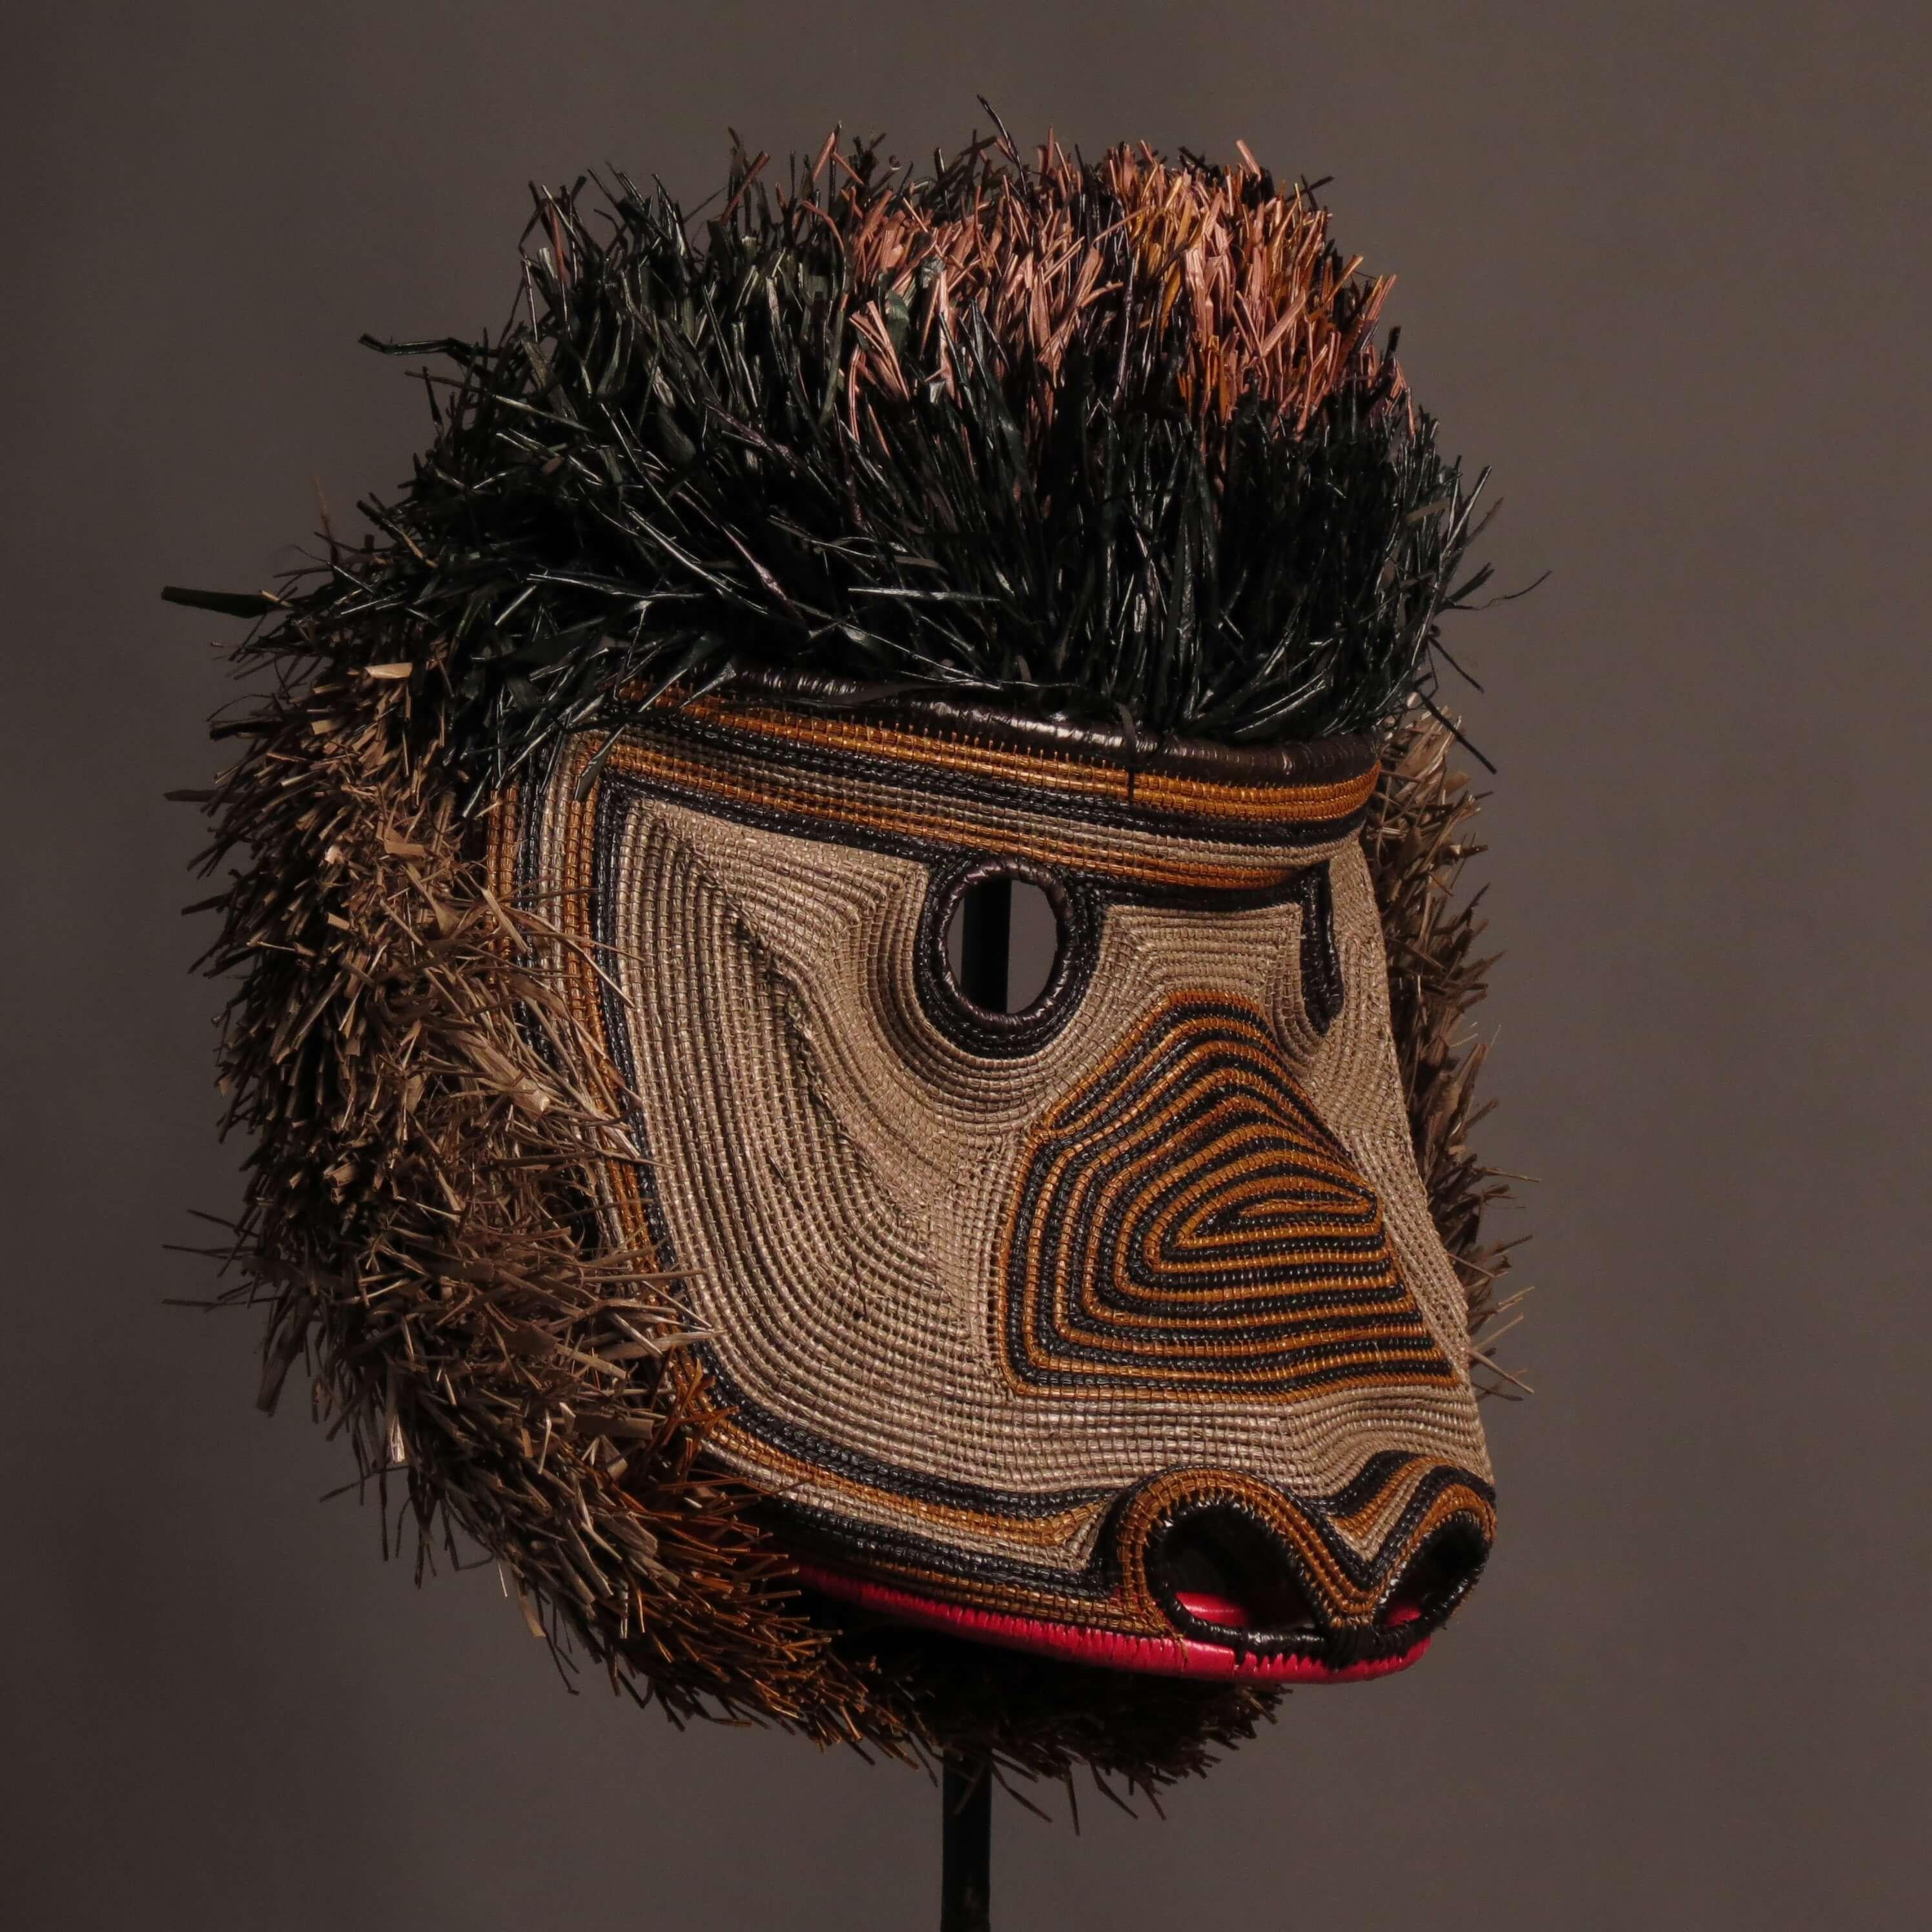 Extraordinaires comme œuvres d'art et de décoration, ces masques sont issus des croyances et rituels chamaniques des tribus d'Amérique centrale.
Les indigènes divisent le monde en deux, un monde visible et un monde parallèle, invisible.
Ces esprits